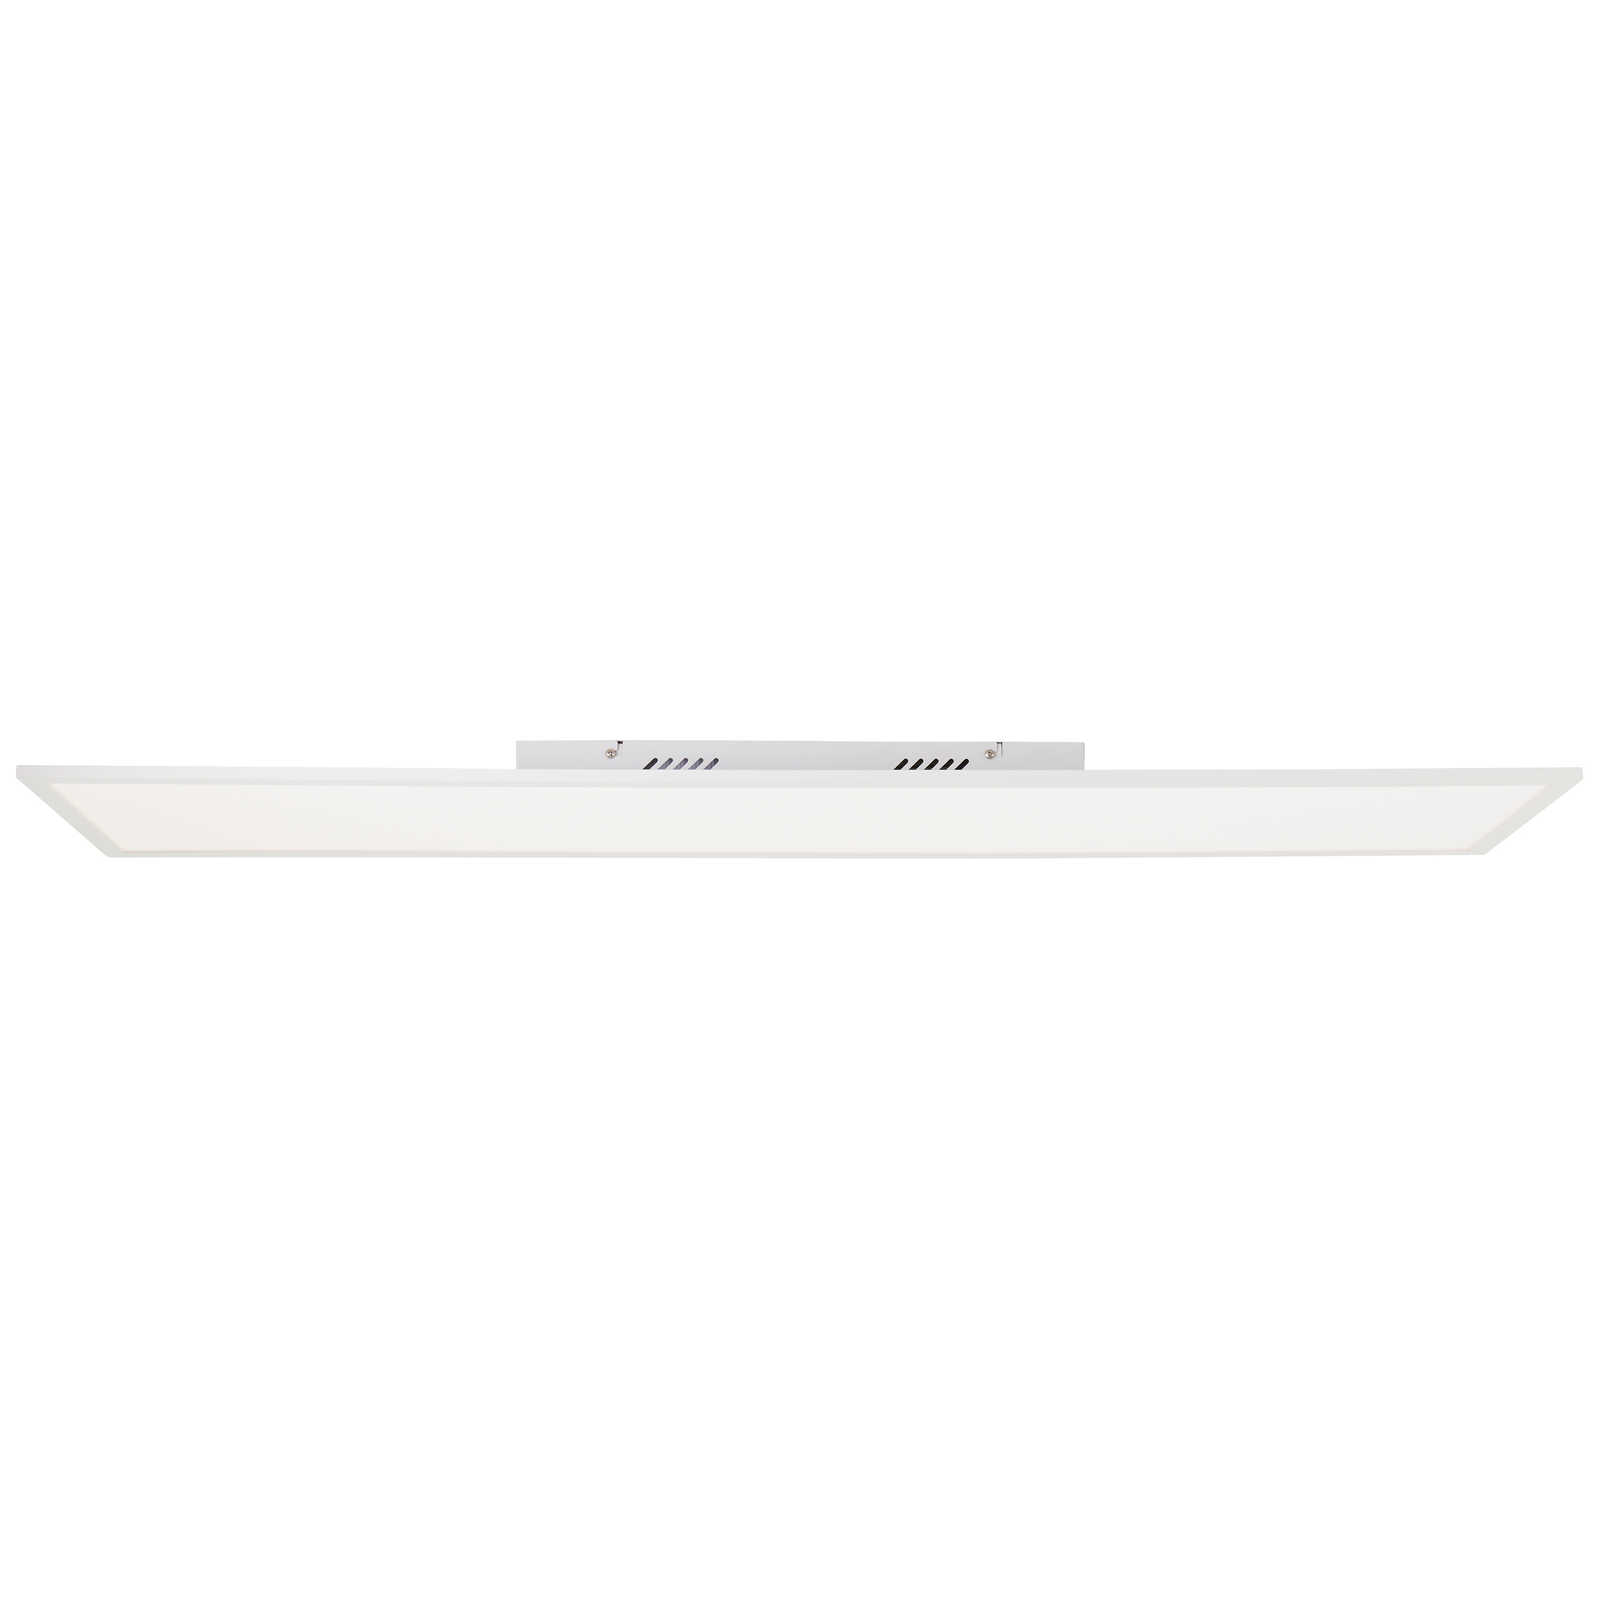             Plastic ceiling light - Jolien 4 - White
        